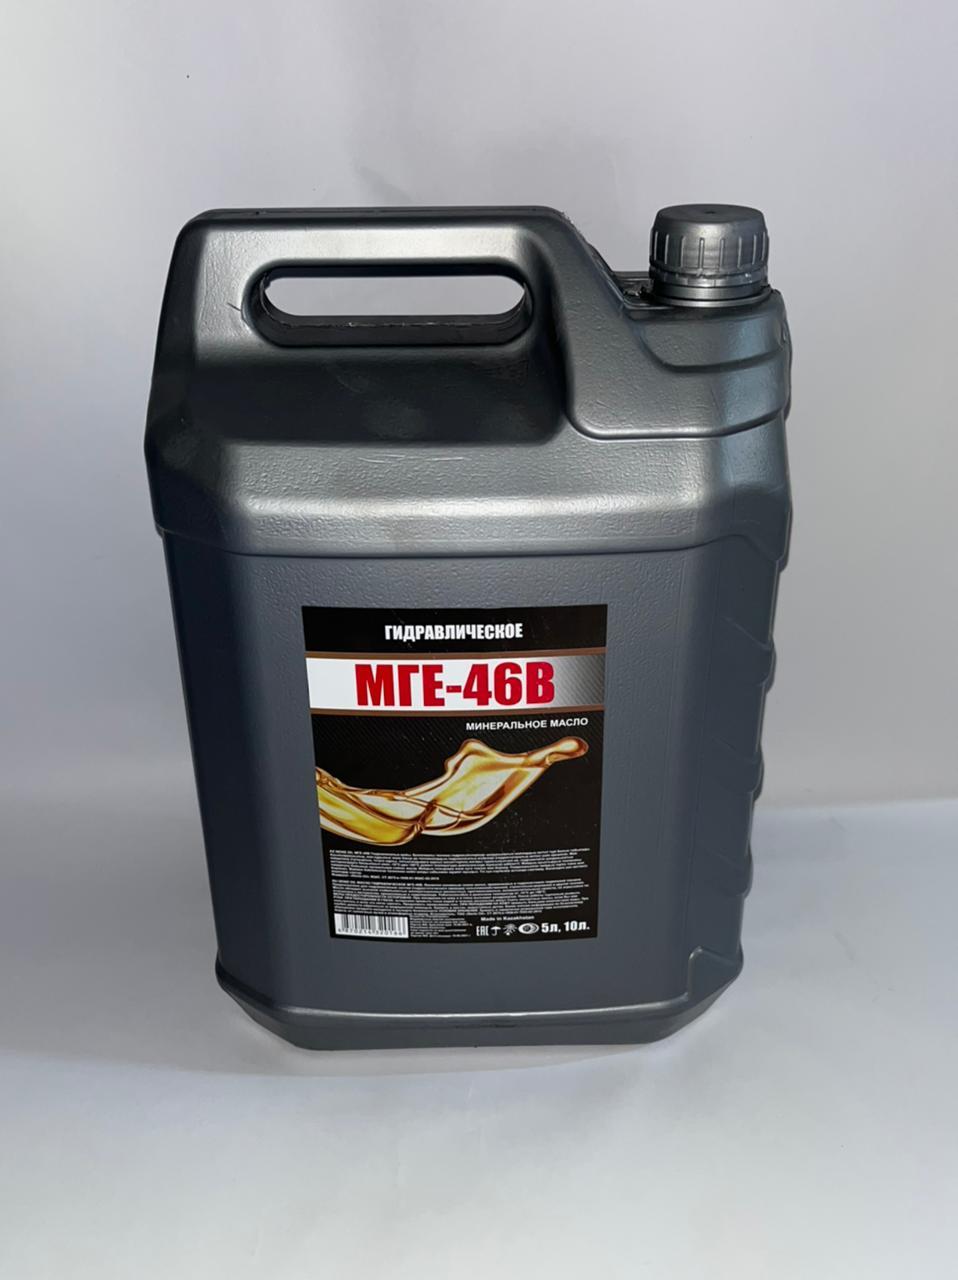 МГЕ-46В Гидравлическое минеральное масло 10л